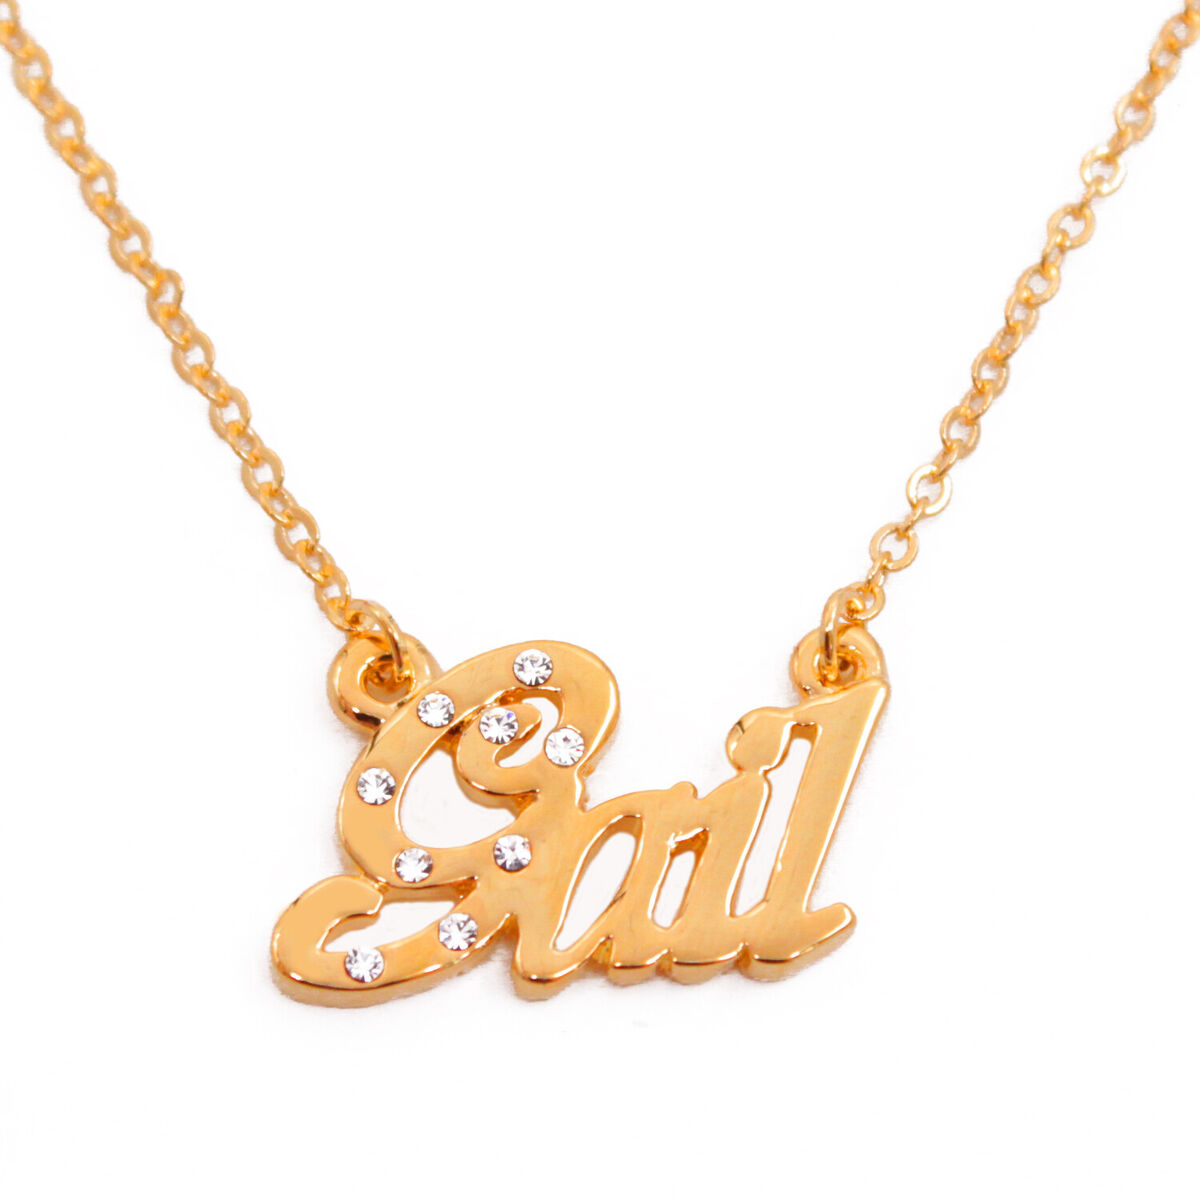 Collar Nombre GAIL Enchapado Oro 18 quilates Boda Regalos de Navidad | eBay